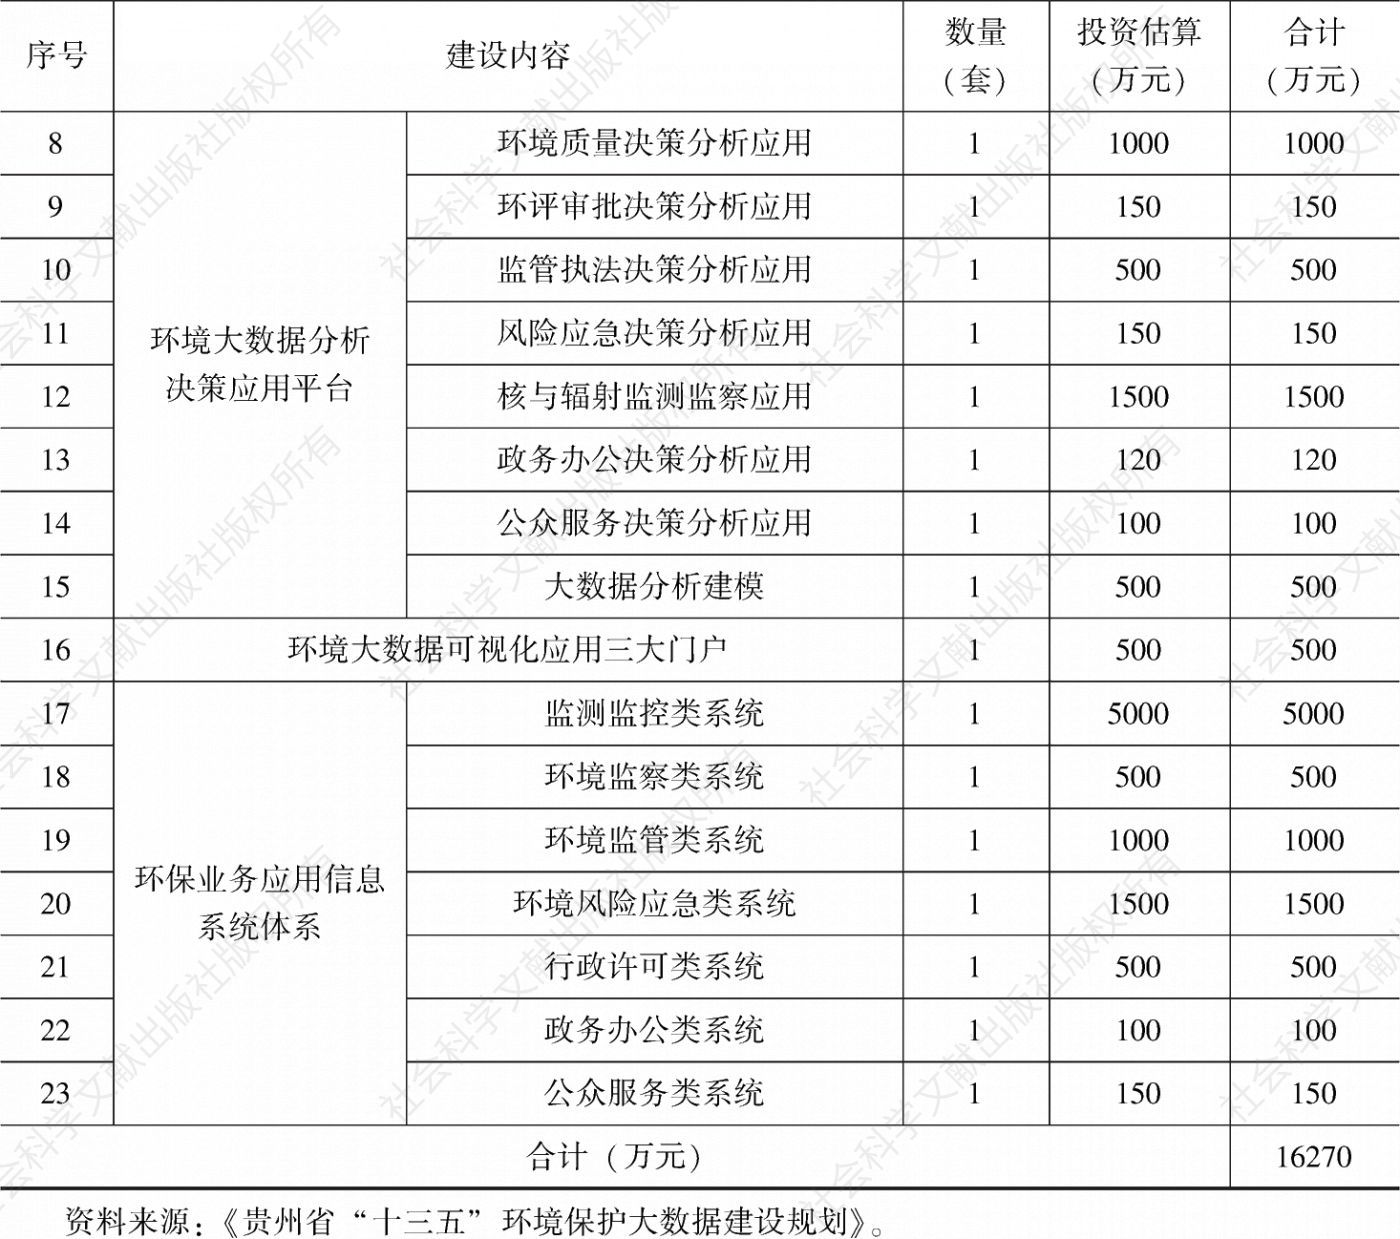 表4-1 贵州省“十三五”环境保护大数据建设重点项目汇总-续表